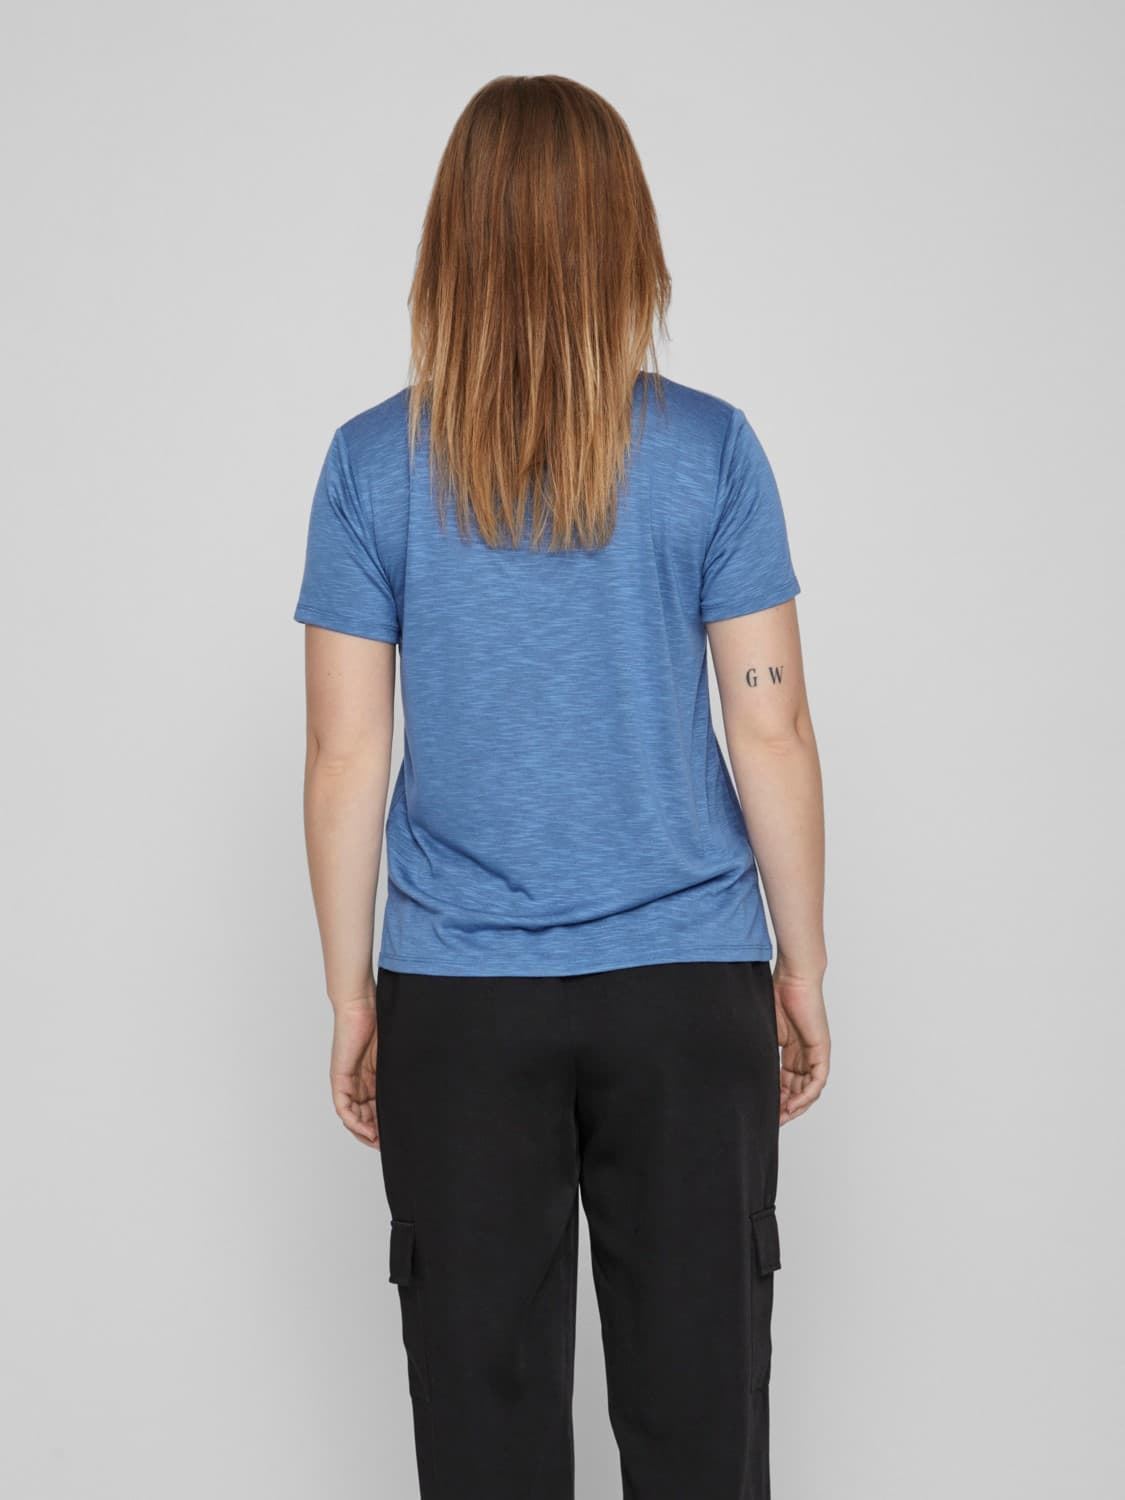 Camiseta azul vinoel - Imagen 2